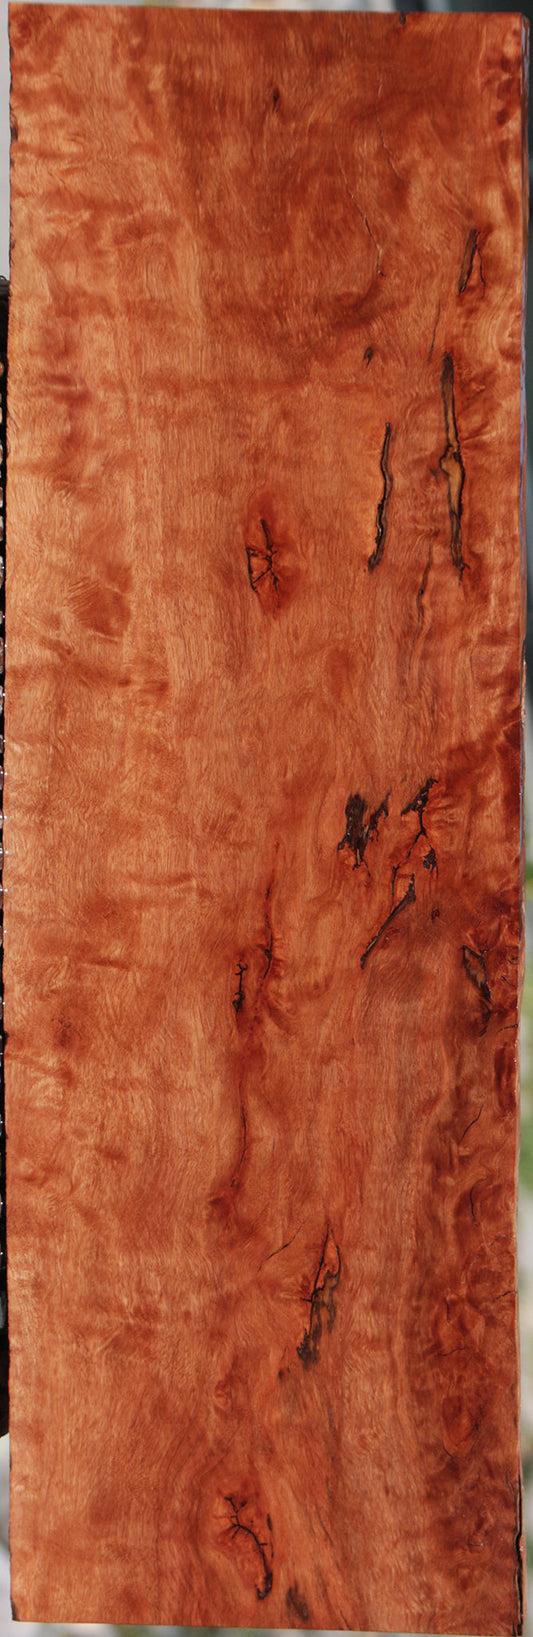 Rustic Rambutan Lumber